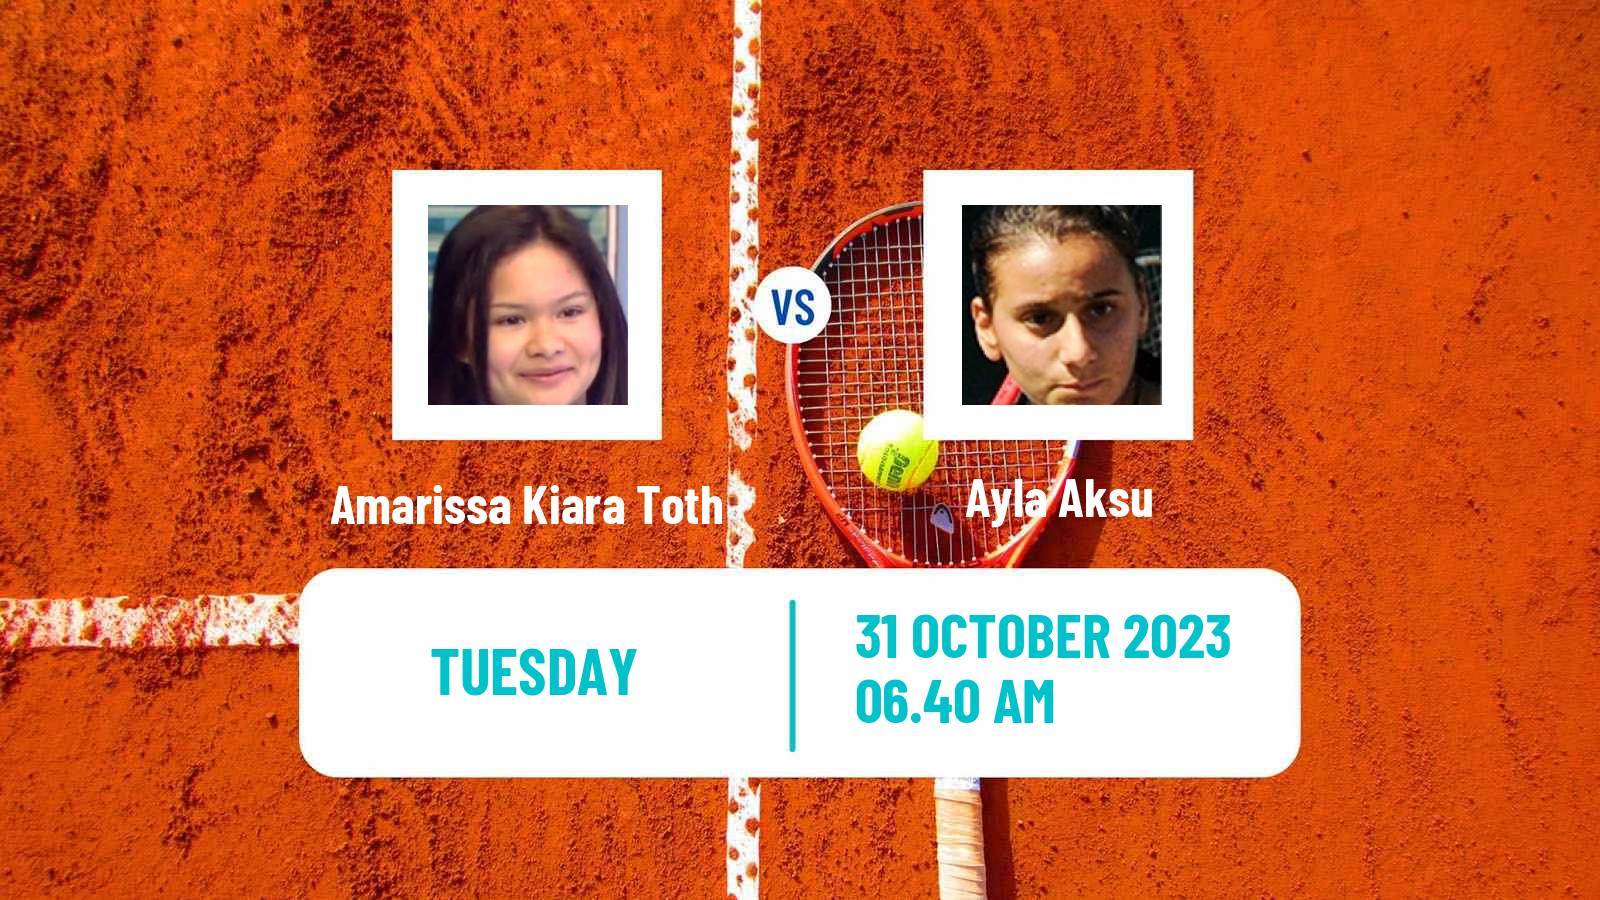 Tennis ITF W60 Bratislava Women Amarissa Kiara Toth - Ayla Aksu